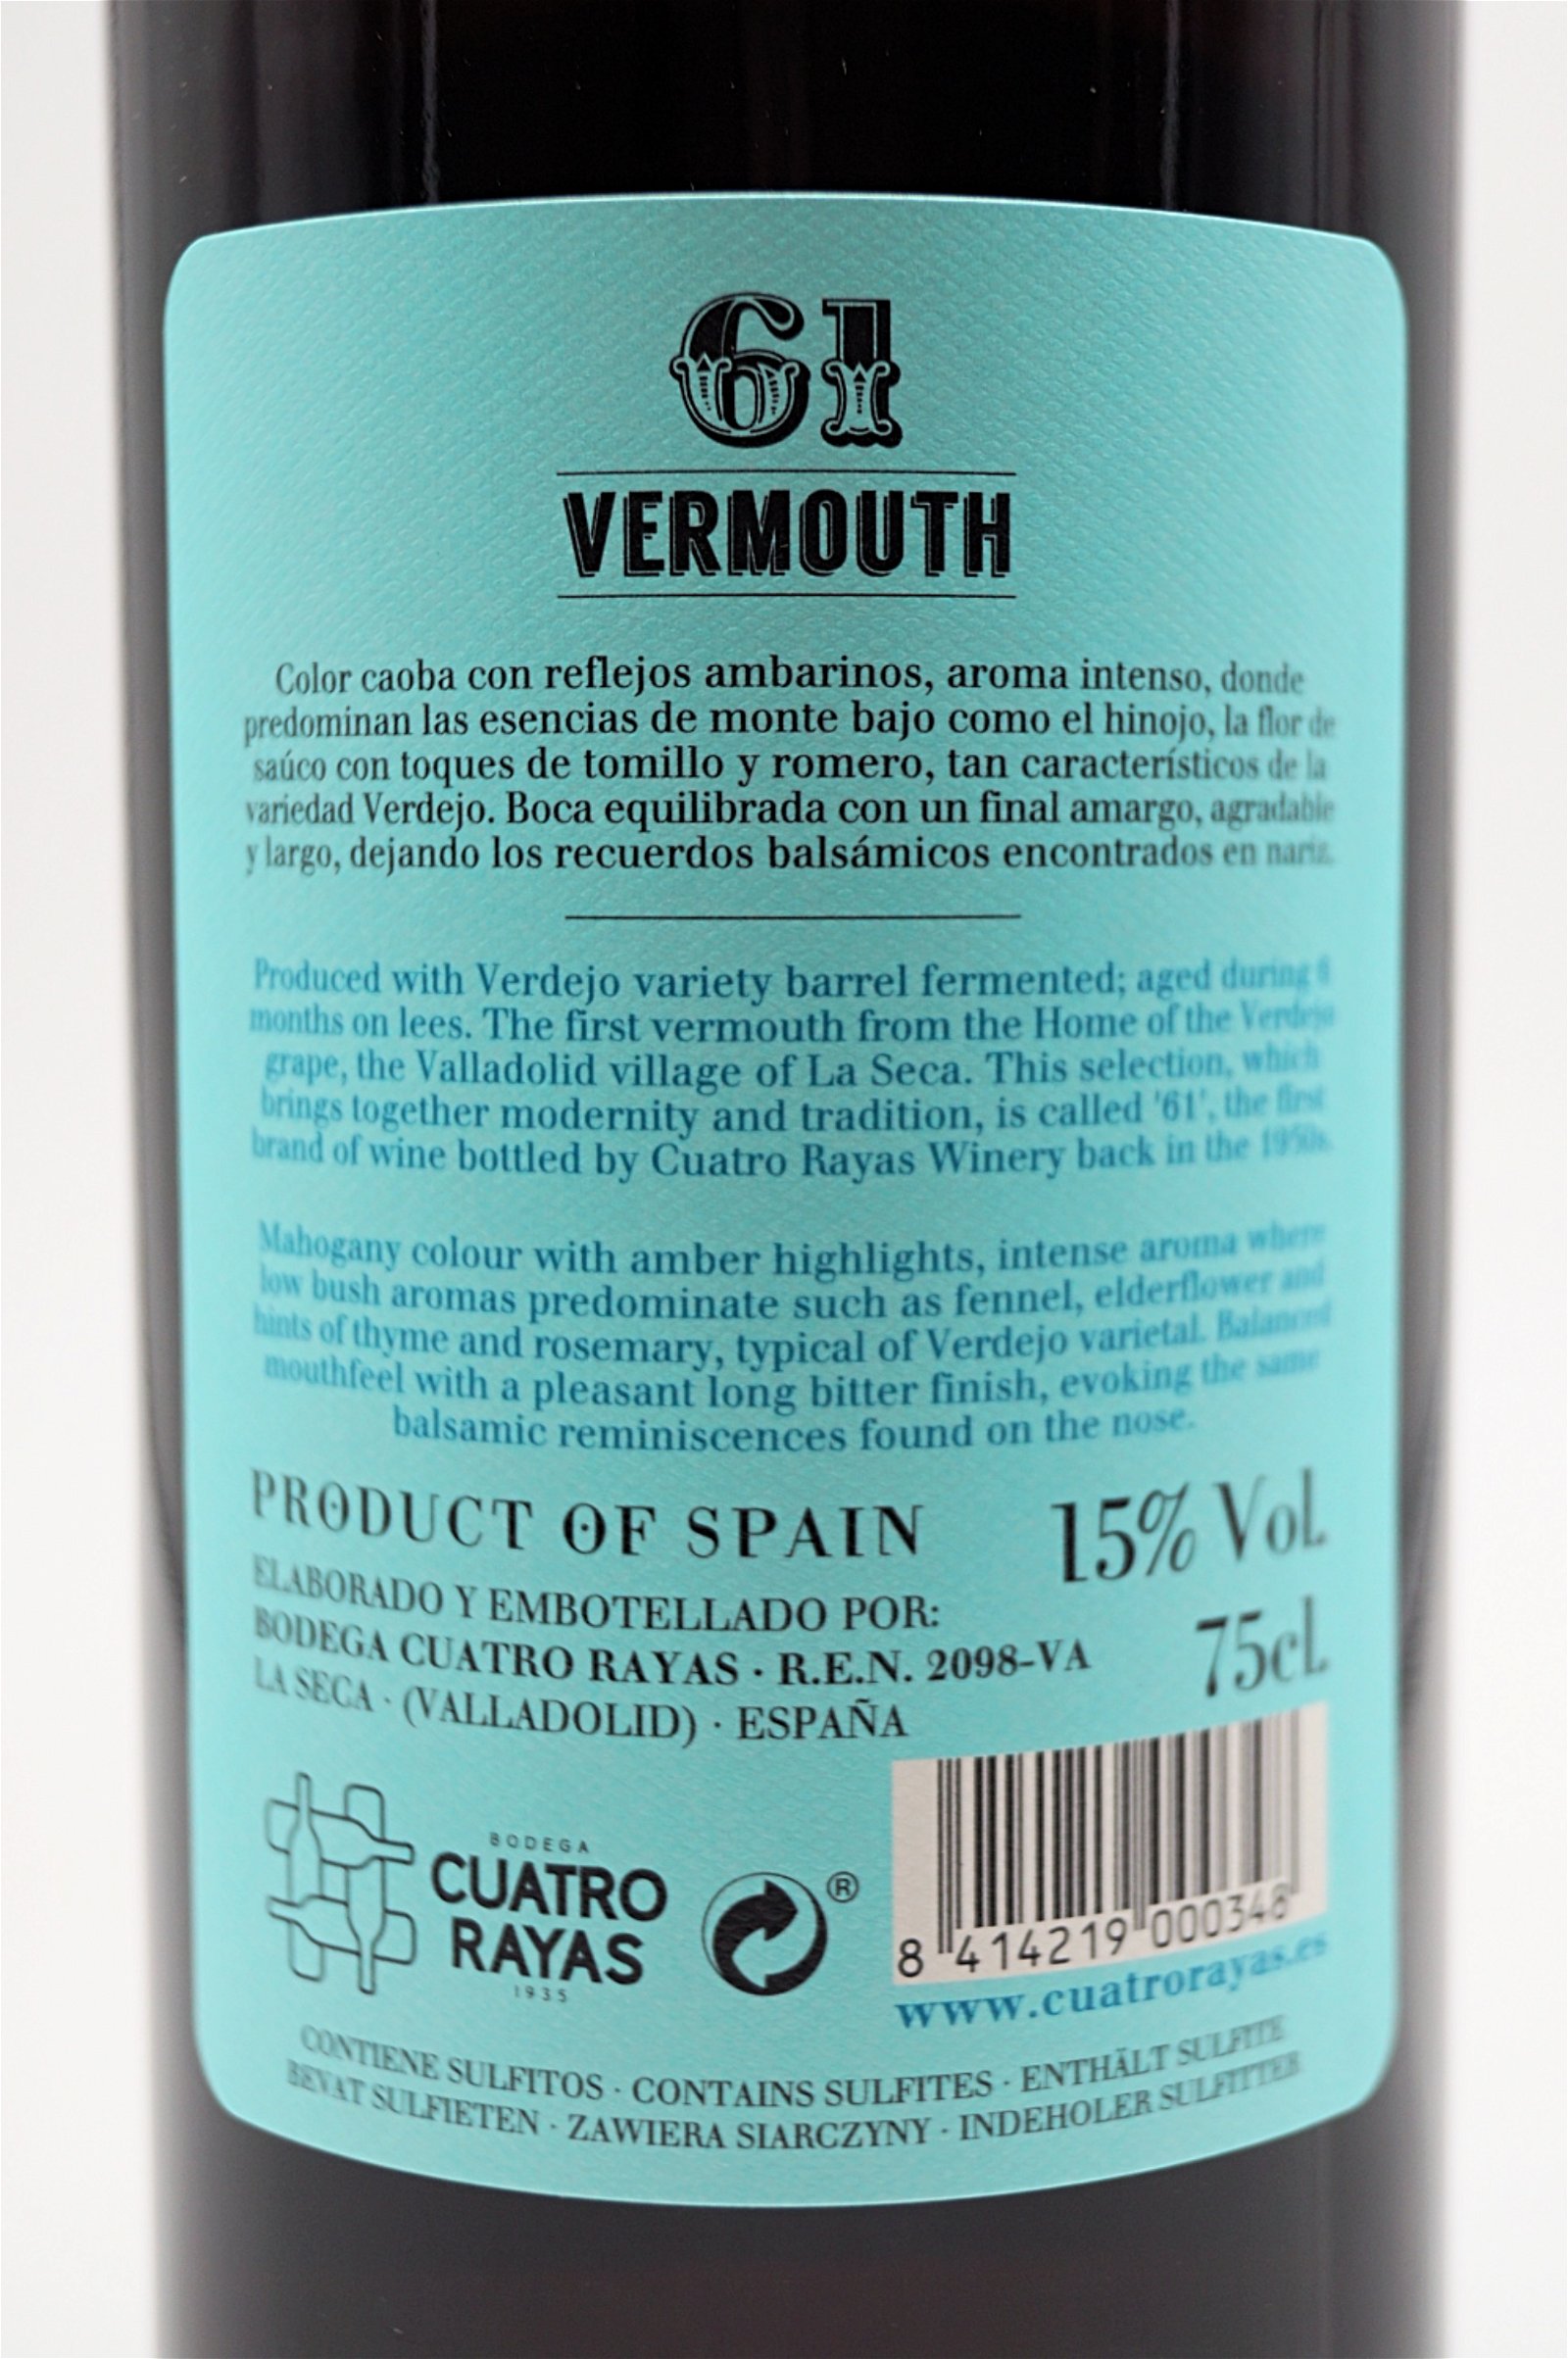 61 Vermouth Verdejo Vermouth